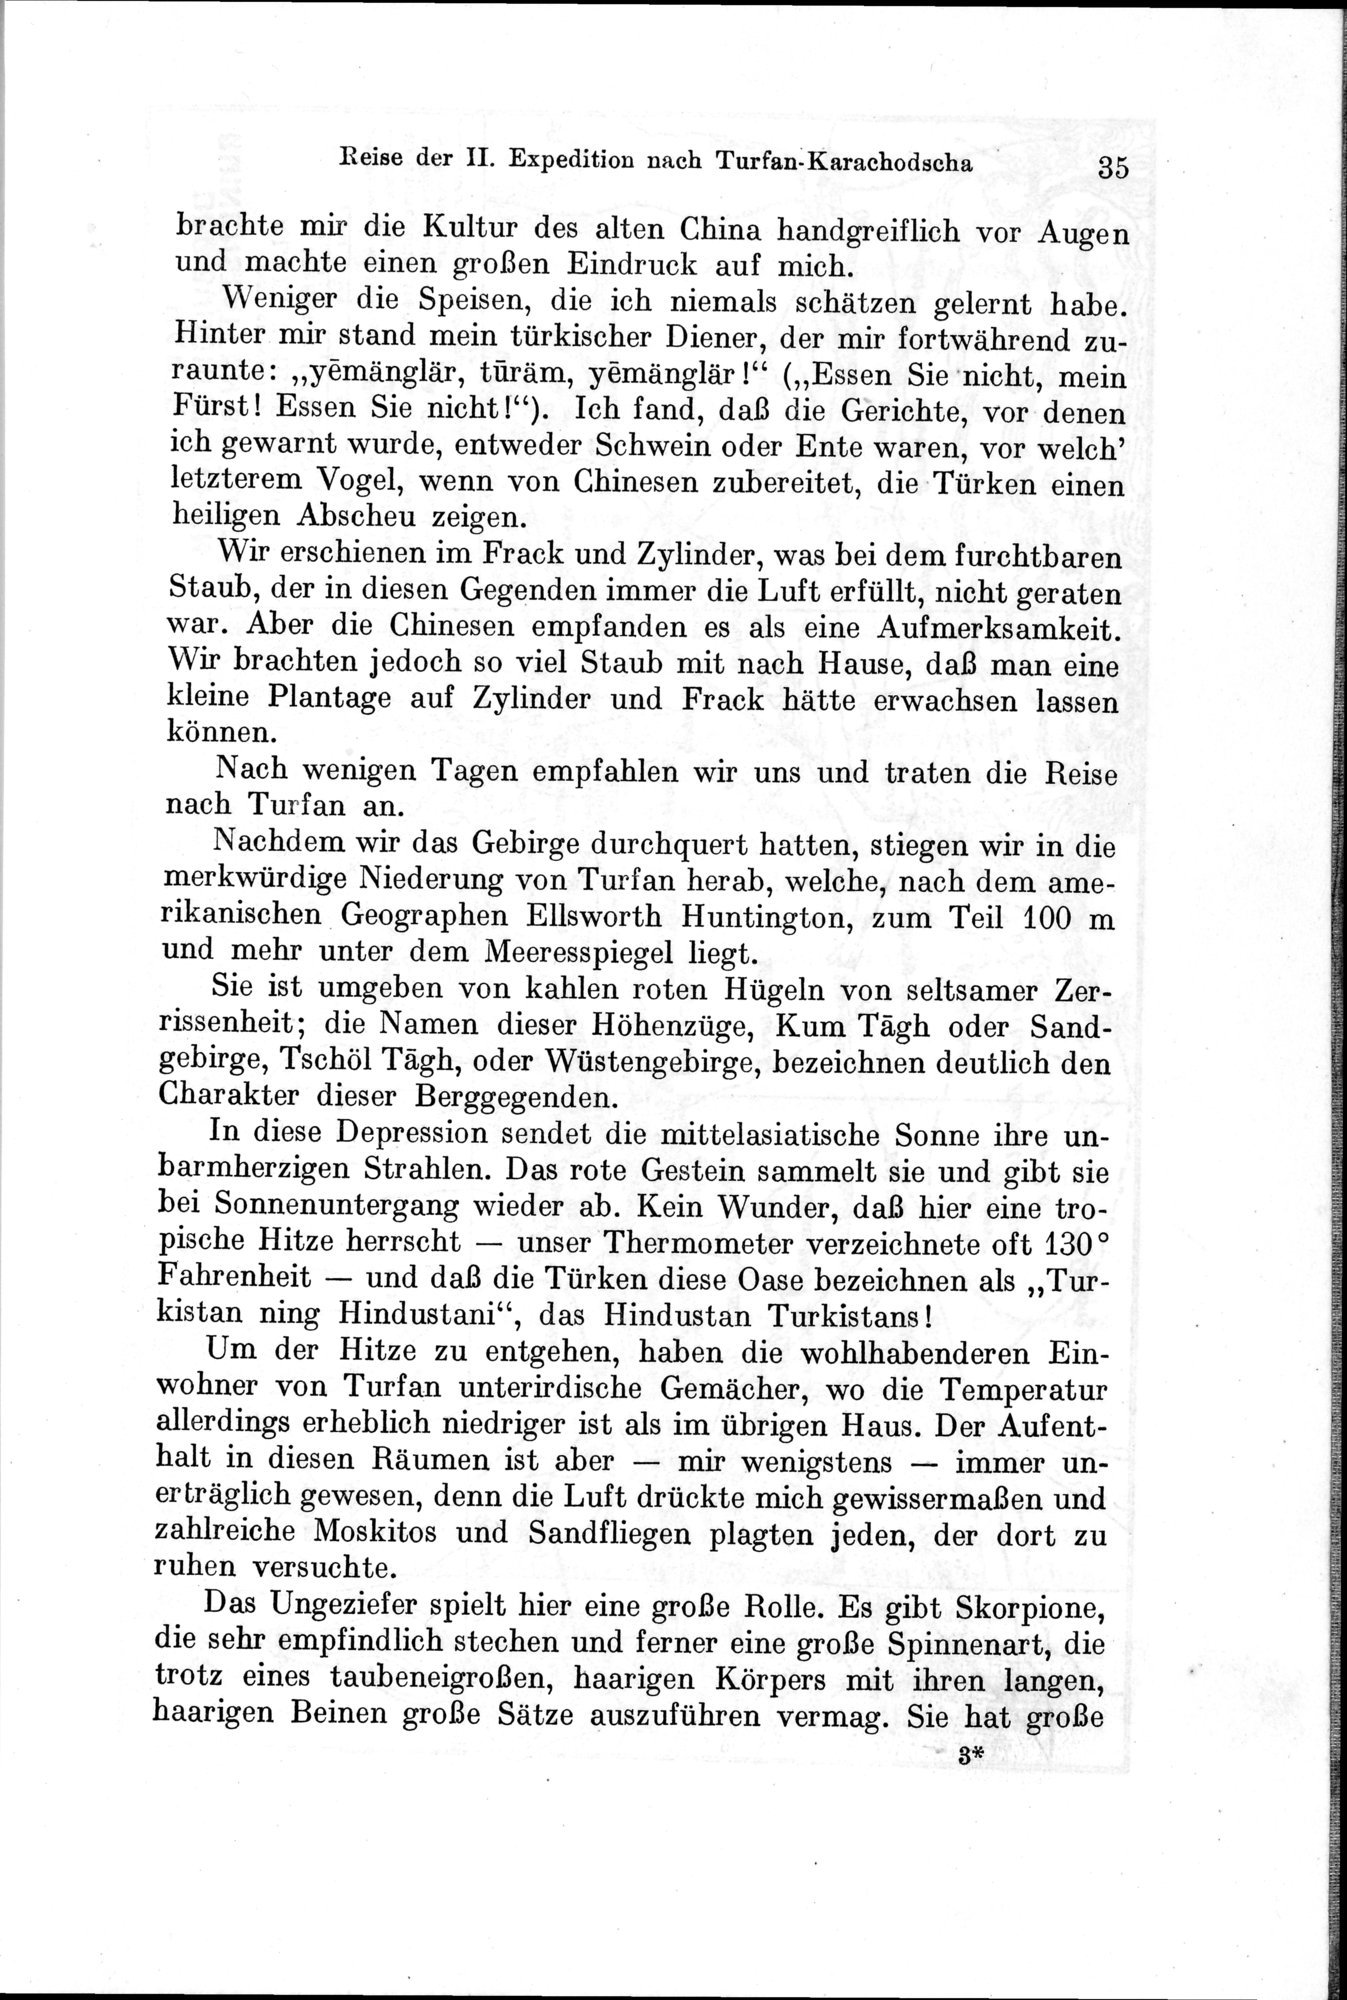 Auf Hellas Spuren in Ostturkistan : vol.1 / Page 57 (Grayscale High Resolution Image)